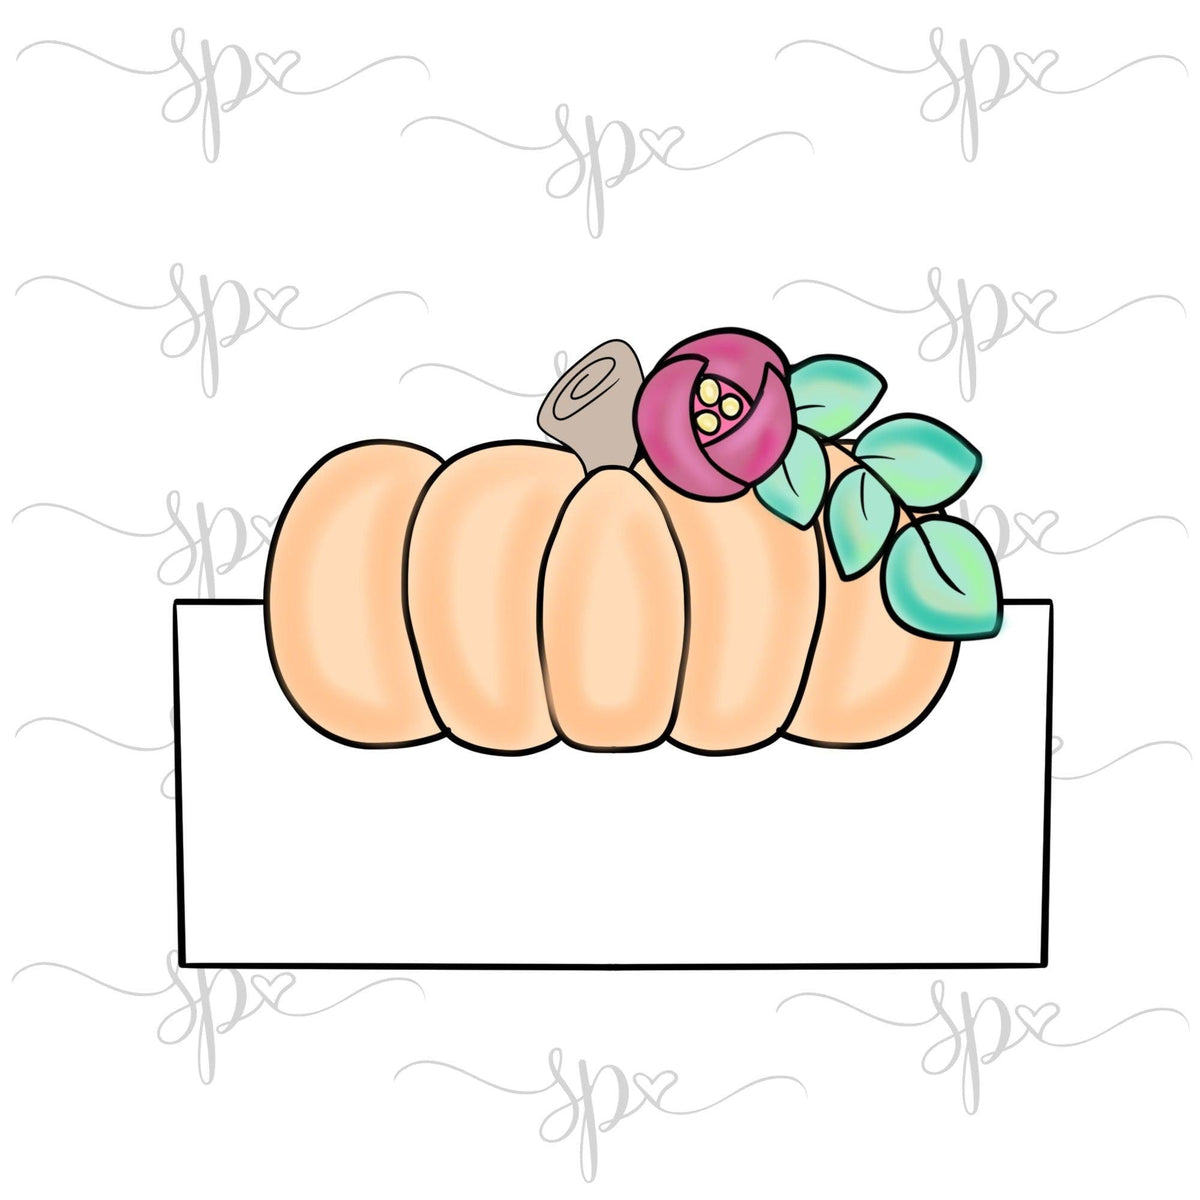 Floral Long Pumpkin Plaque Cookie Cutter - Sweetleigh 